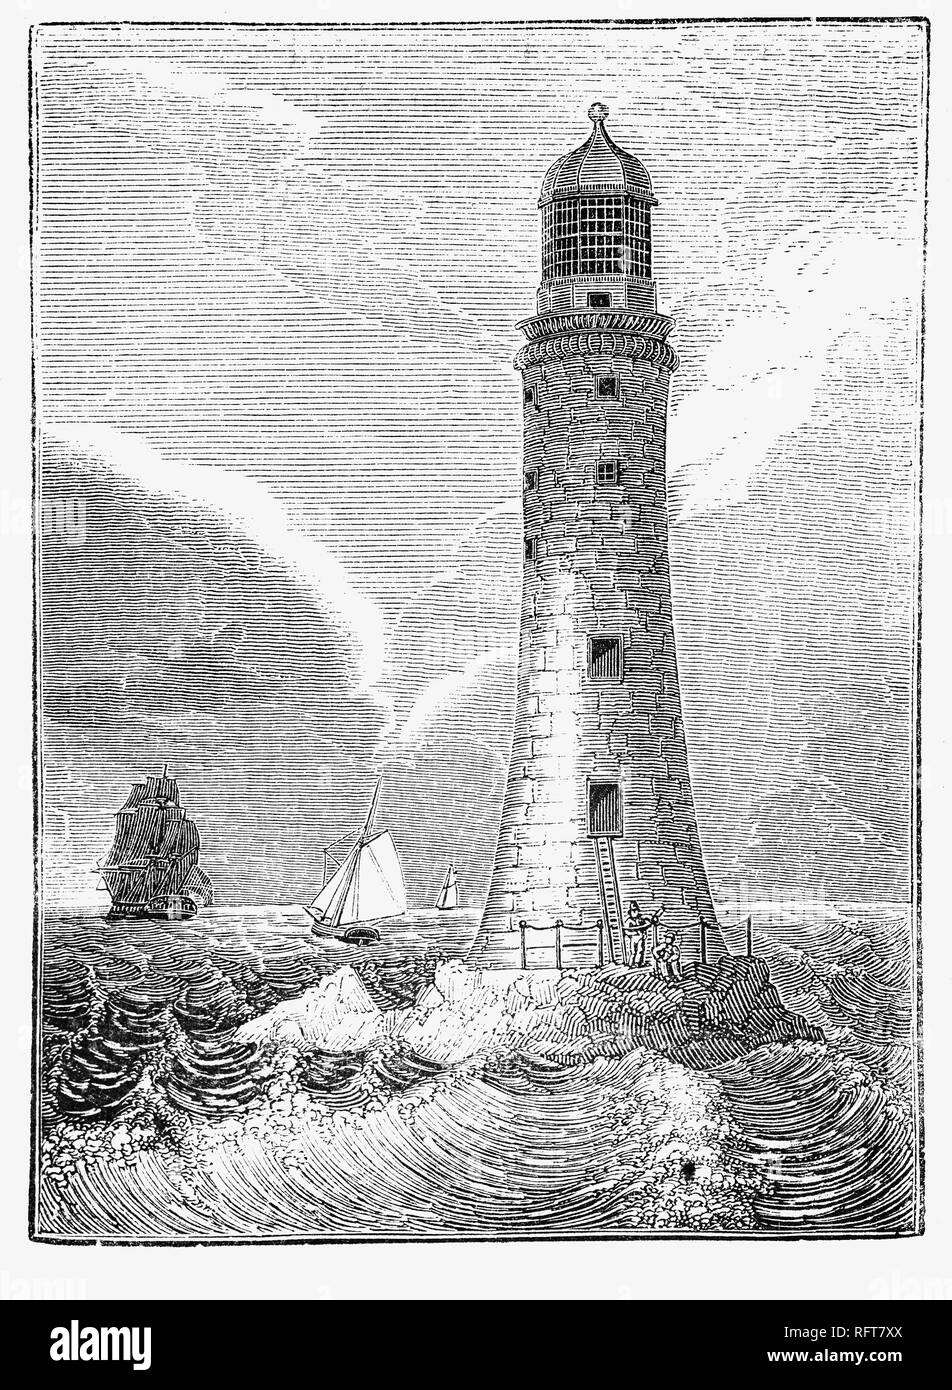 Le troisième phare Eddystone Eddystone Rocks sur la dangereuse, au sud de rame Head, en Angleterre. Conçu par la Société royale, ingénieur civil John Smeaton a modelé la forme sur un chêne, construit de blocs de granit. Il est l'un des premiers 'Lime' hydraulique, un béton qui guérie sous l'eau, et mis au point une technique de fixation de l'aide de blocs de granit et d'aronde en douelles. La construction a commencé en 1756 et la lumière fut allumée pour la première fois le 16 octobre 1759. En 1841 D'importantes rénovations ont été faites et il est resté en usage jusqu'en 1877 quand il a été reconstruit sur Plymouth Hoe, à Plymouth, comme un mémorial. Banque D'Images